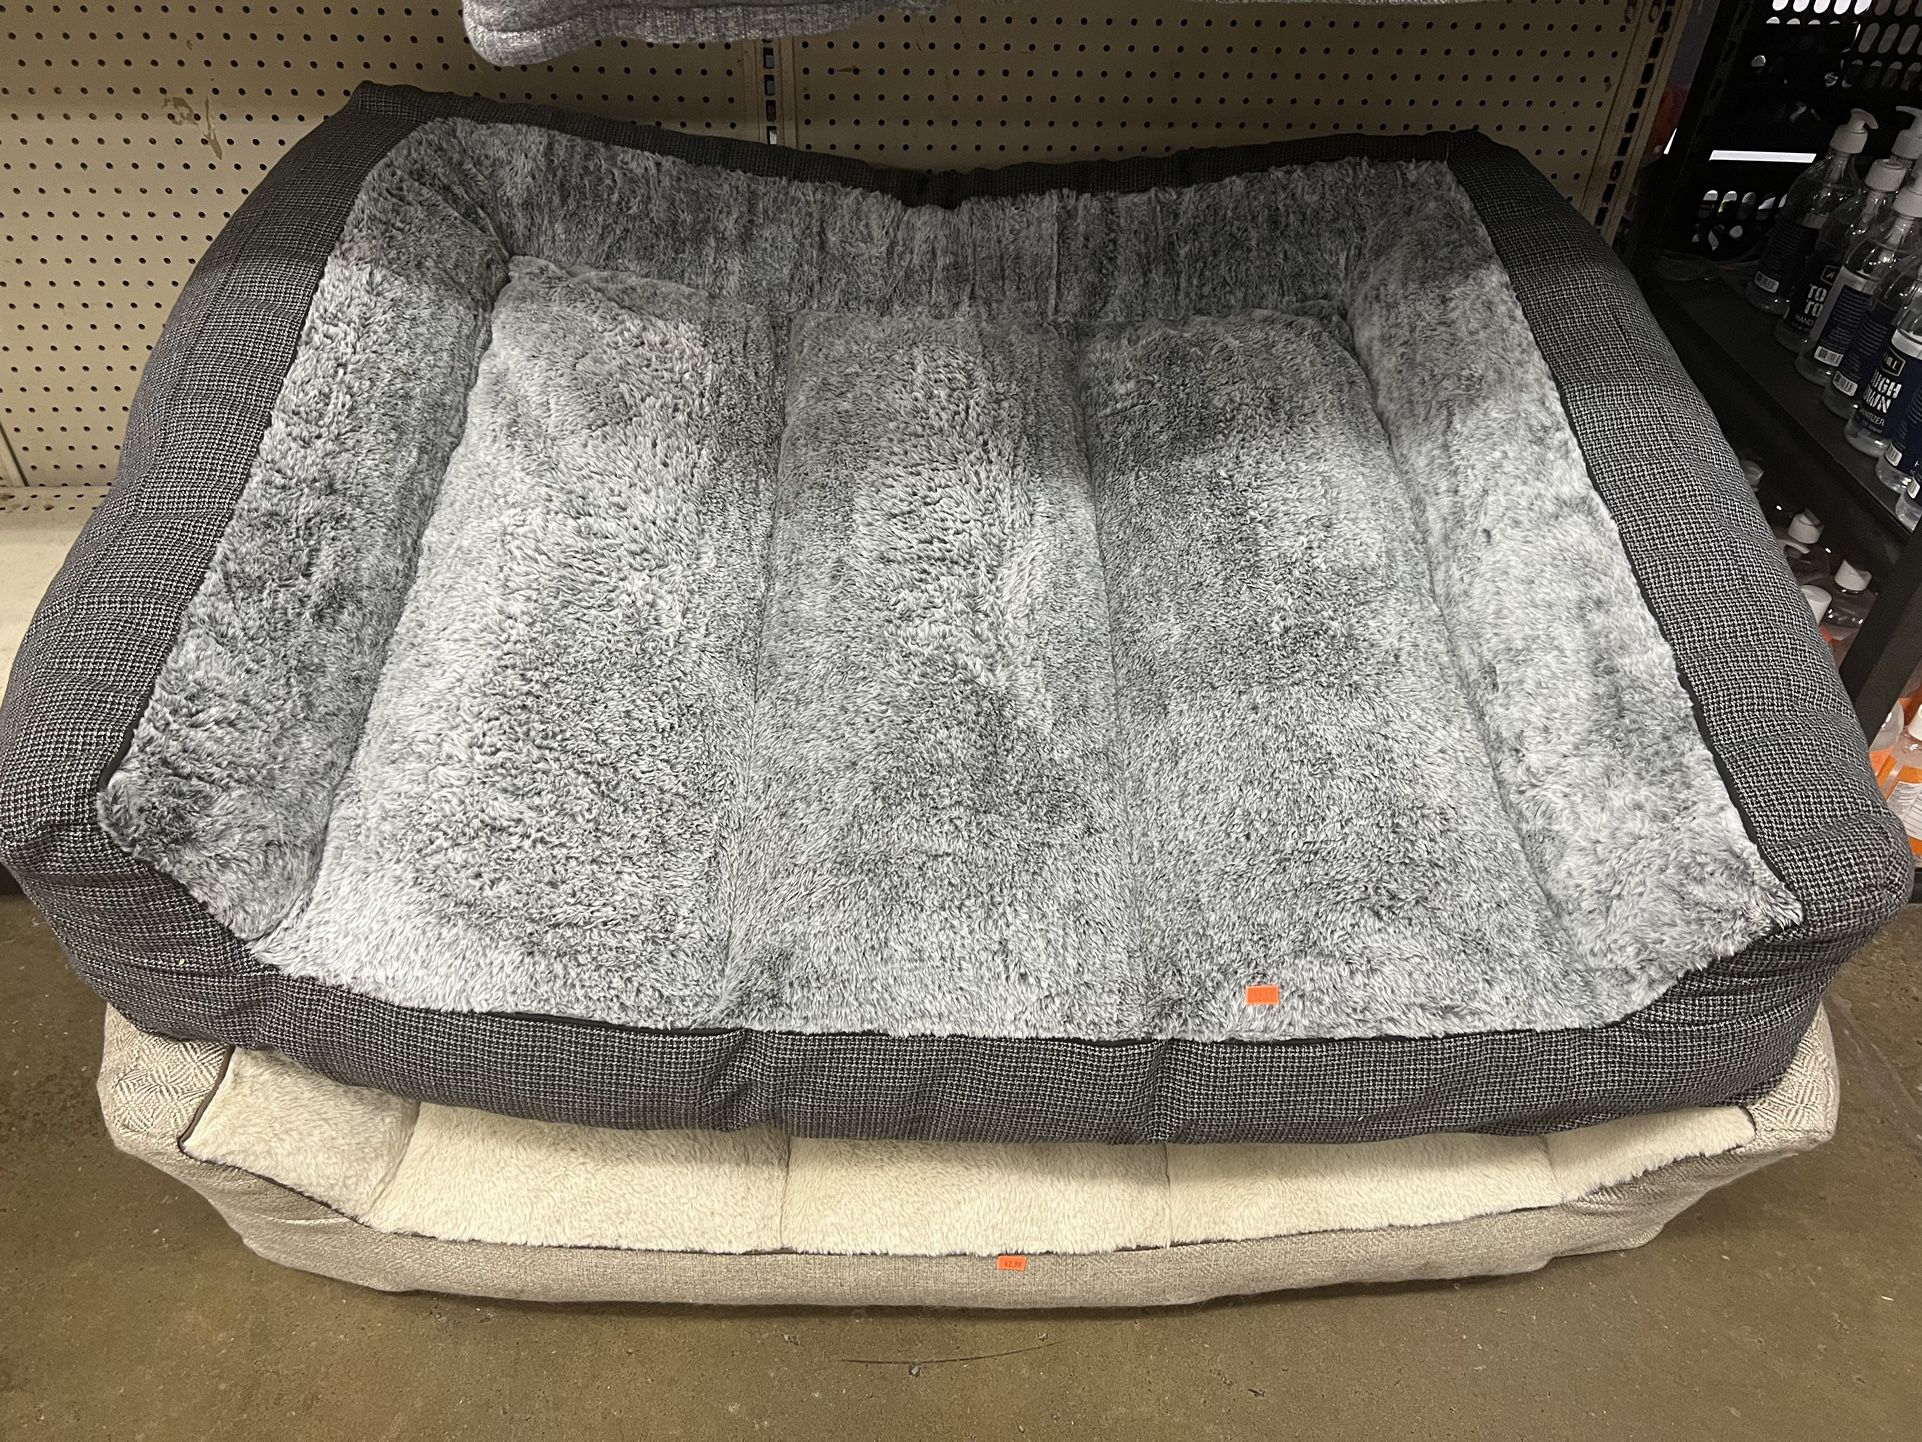 Huge Dog Bed